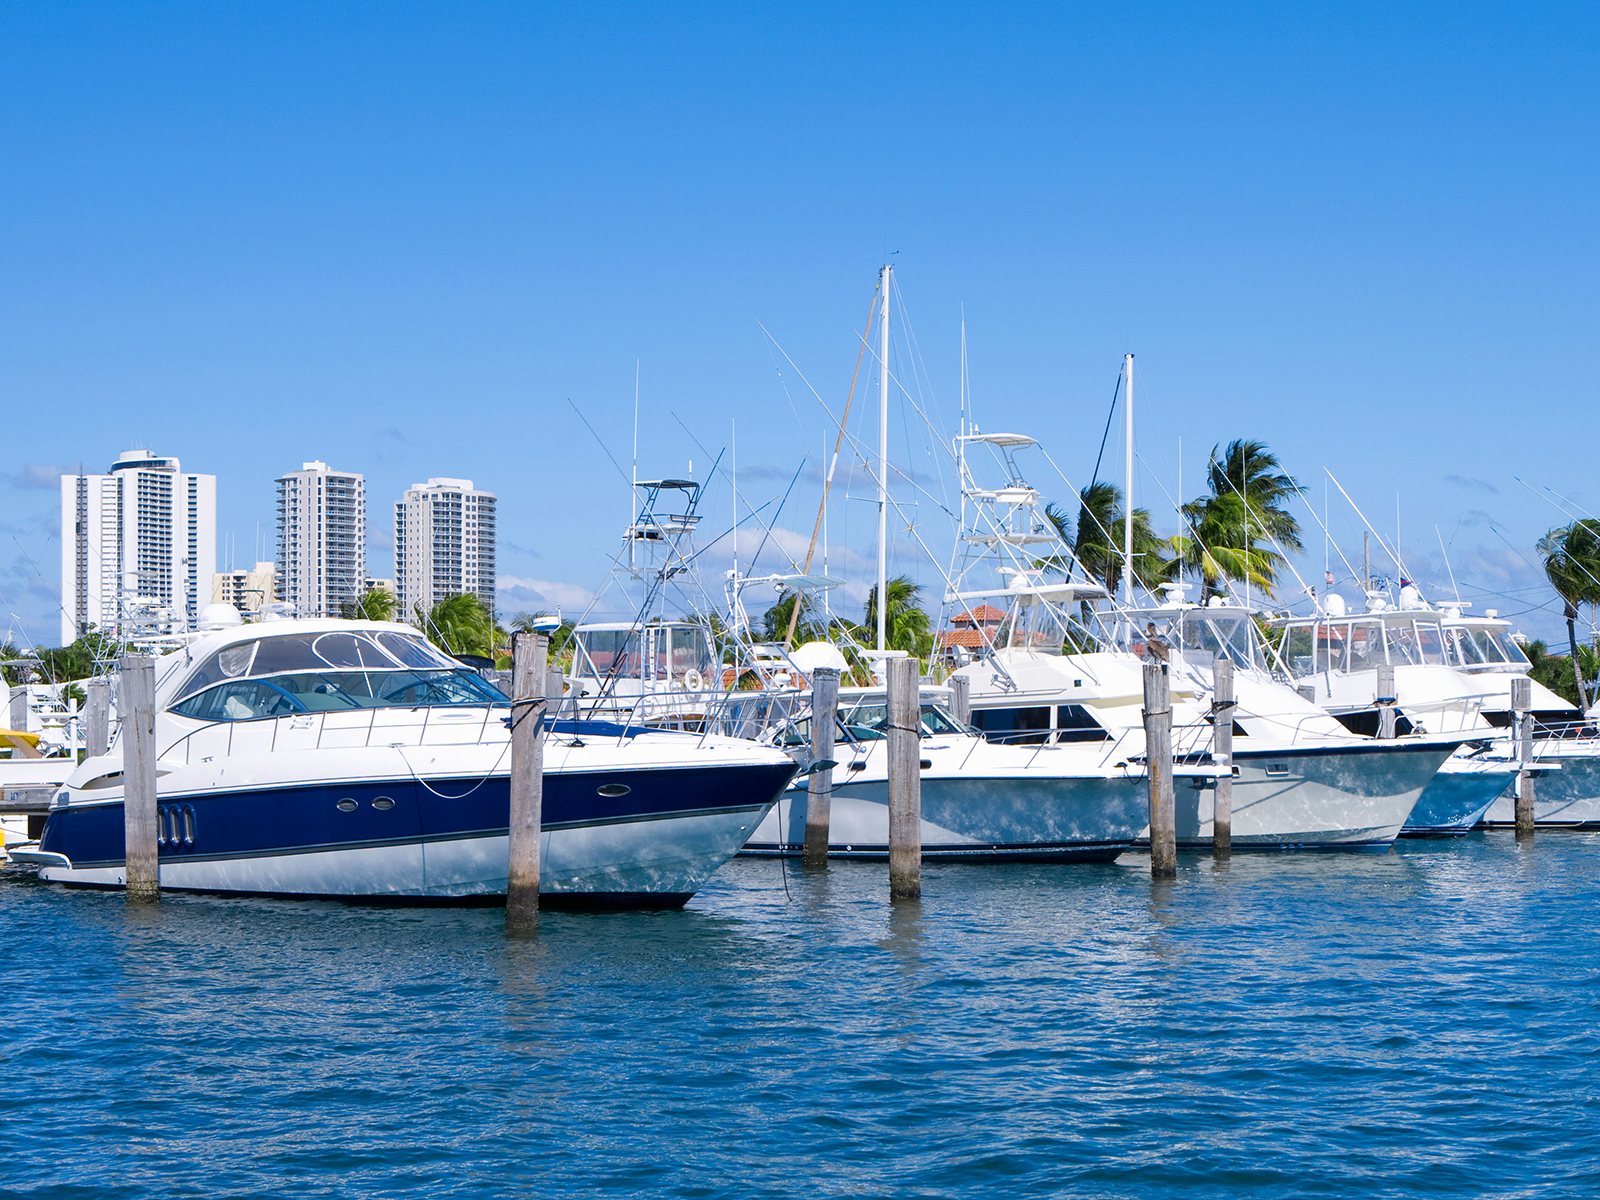 Boats in marina in Palm Beach, Florida, USA